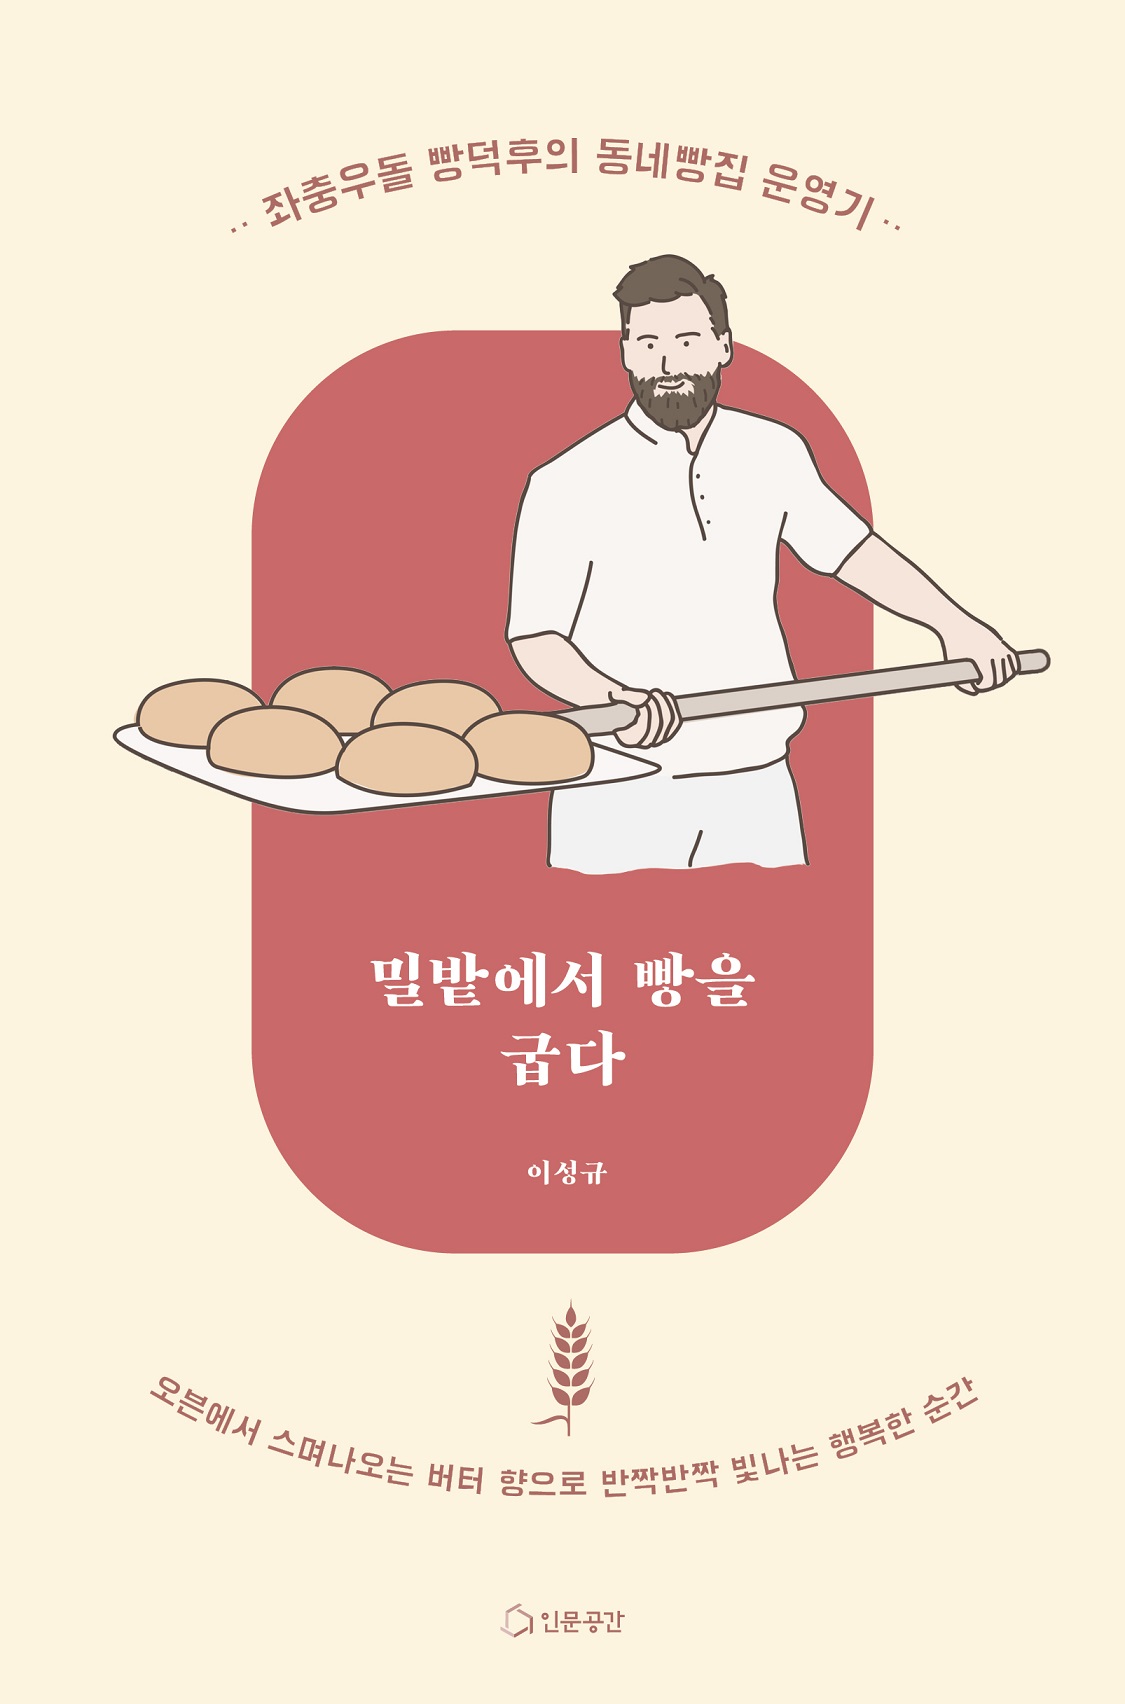 밀밭에서 빵을 굽다 - [전자책]  : 좌충우돌 빵덕후의 동네빵집 운영기